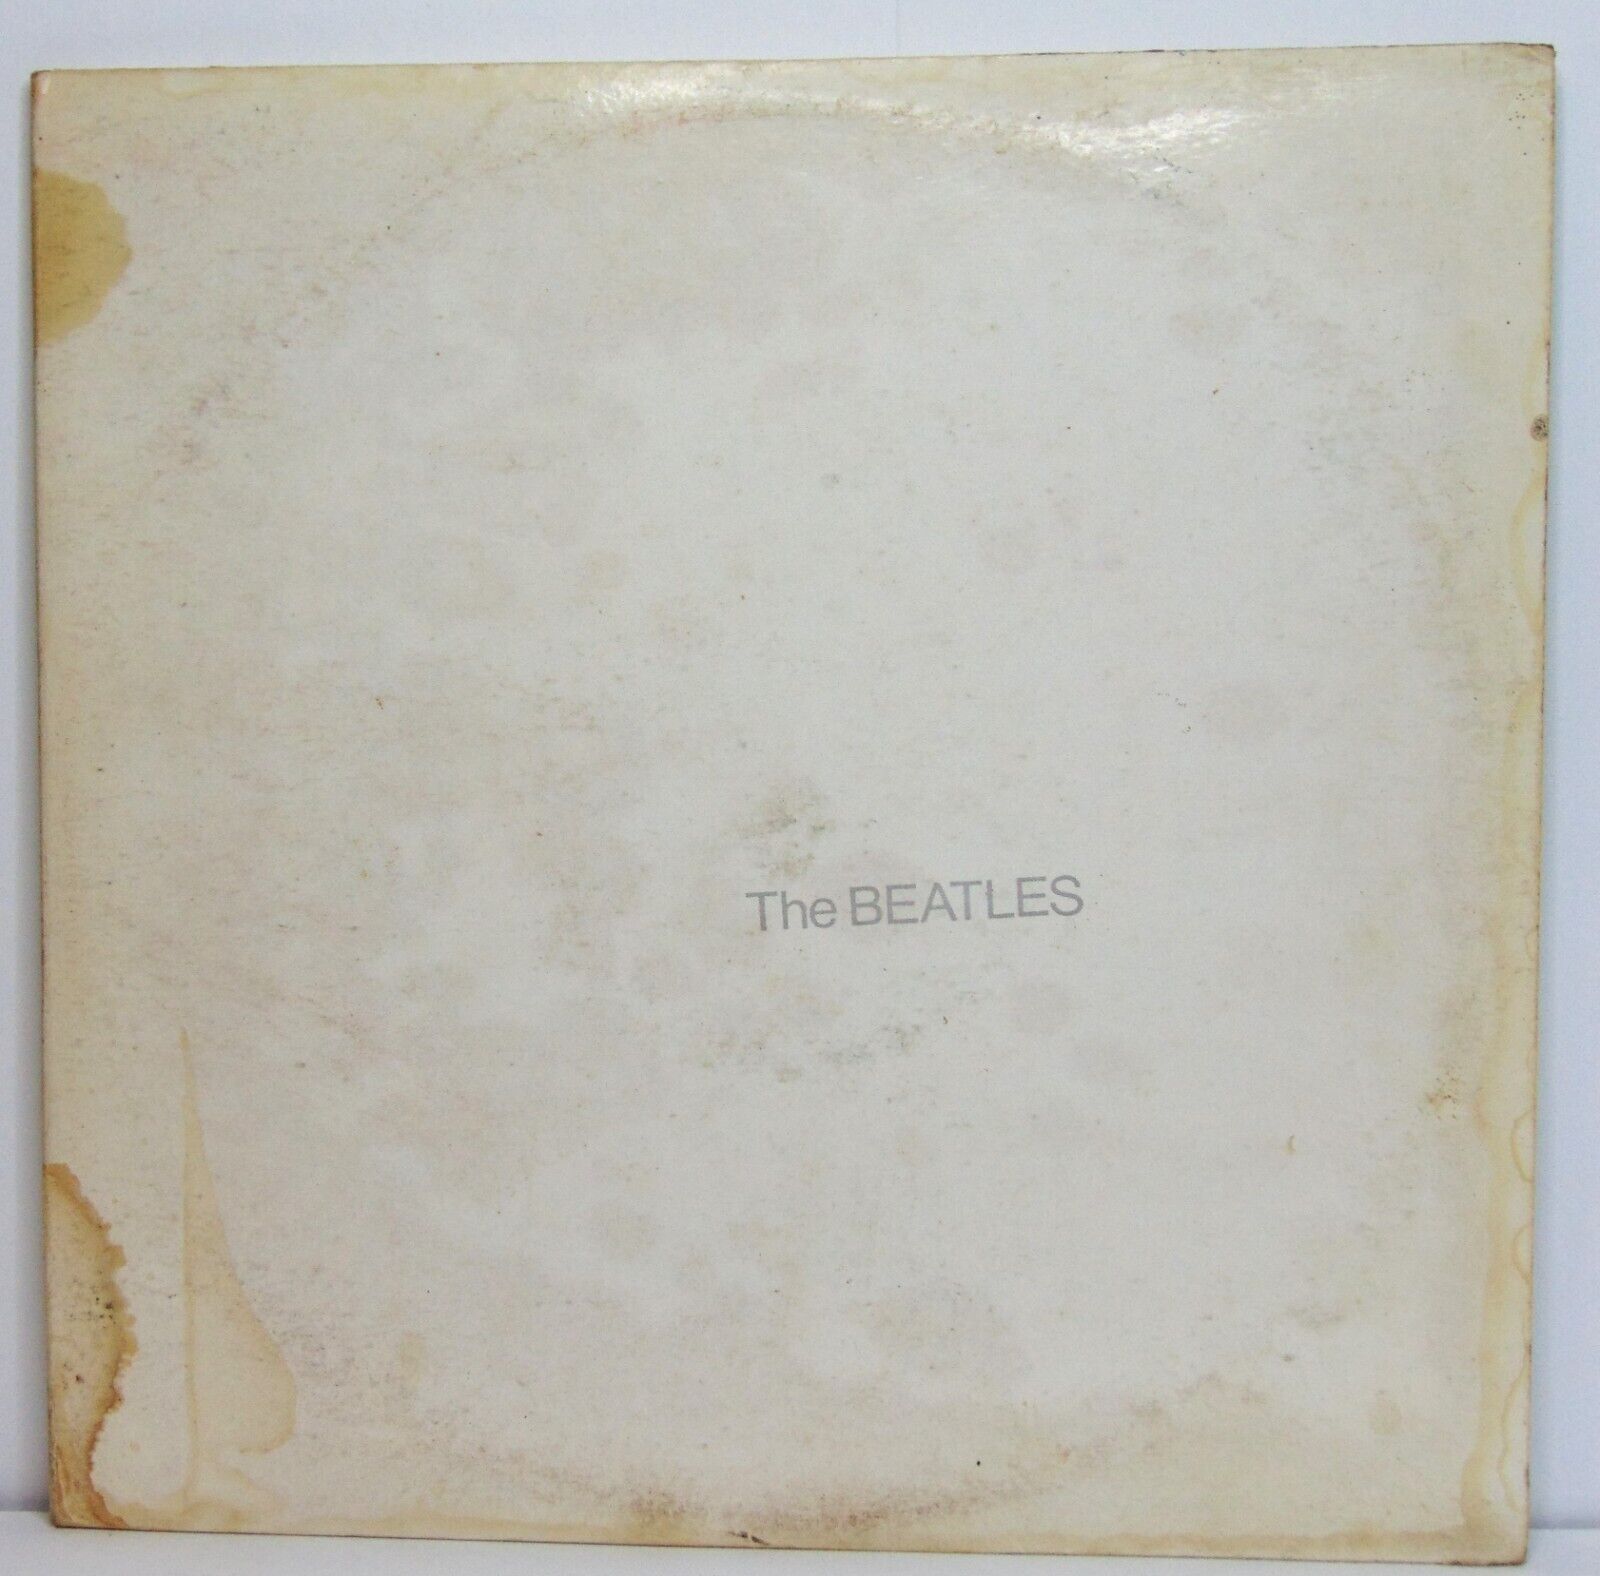 The Beatles - The Beatles (White Album) 1968 Capitol DBL Rock Vinyl LP  VG+/VG